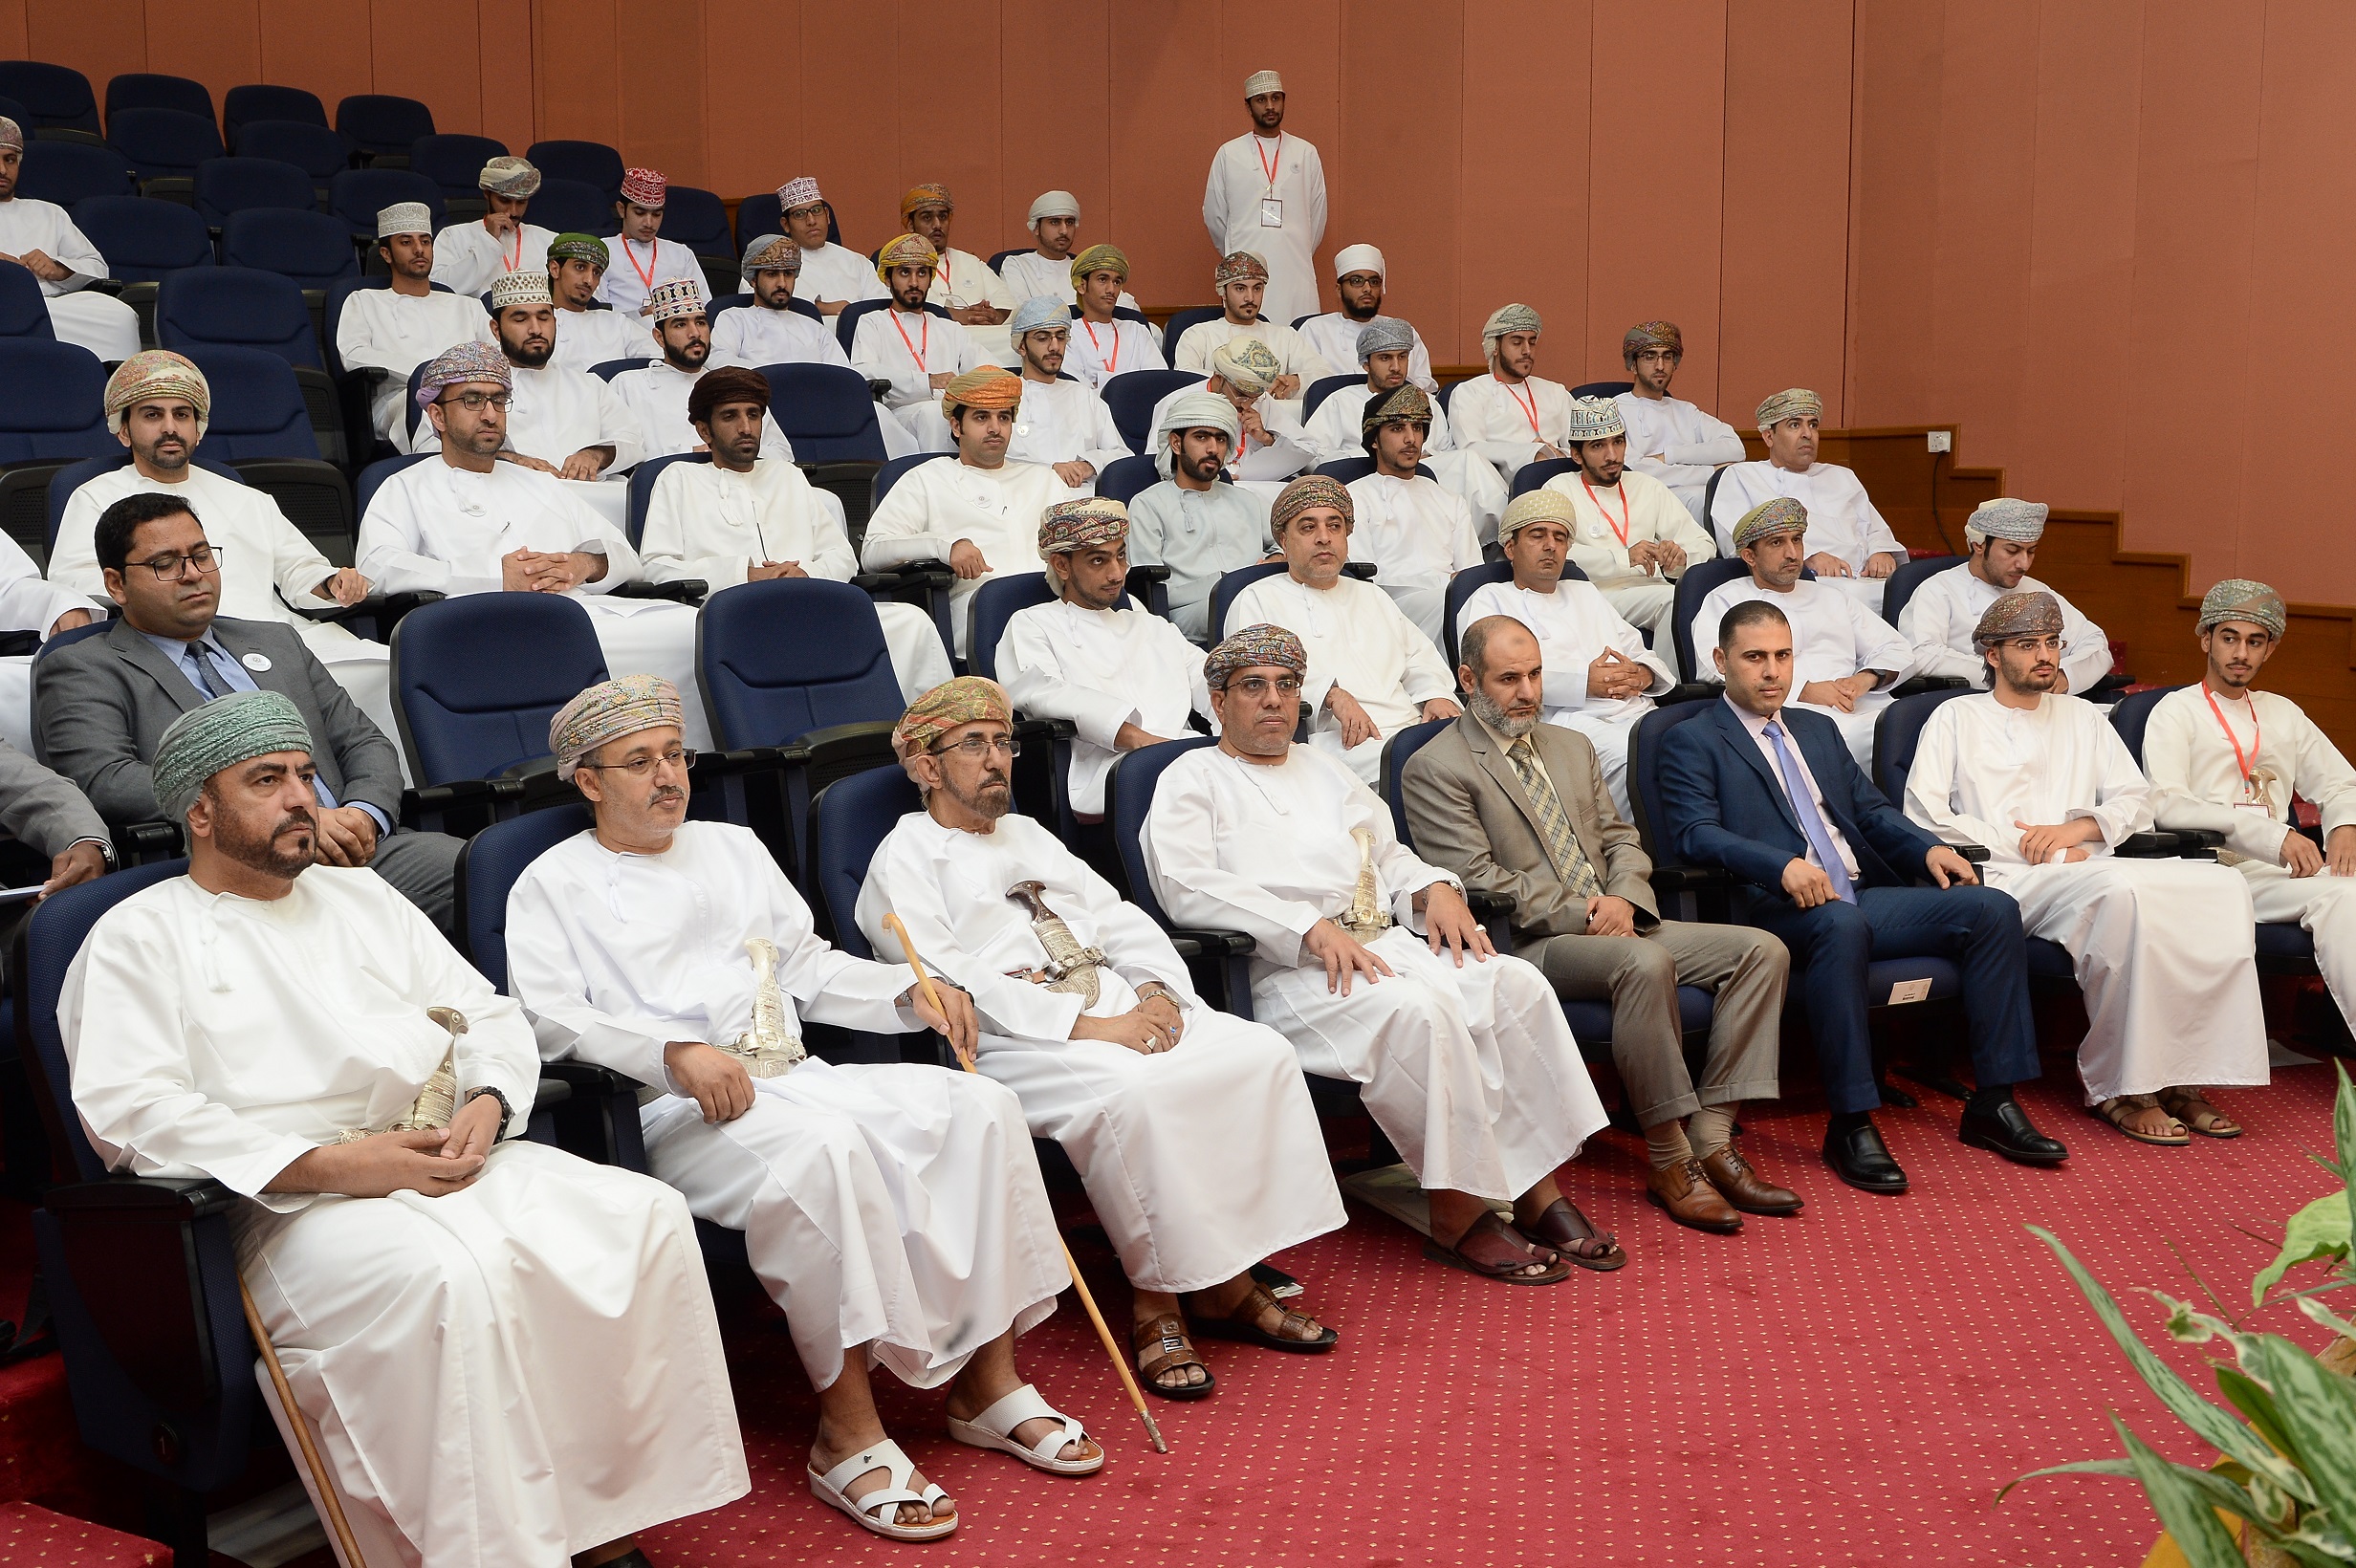 ملتقى بجامعة السلطان قابوس لتعزيز الوعي السياسي بين الأفراد